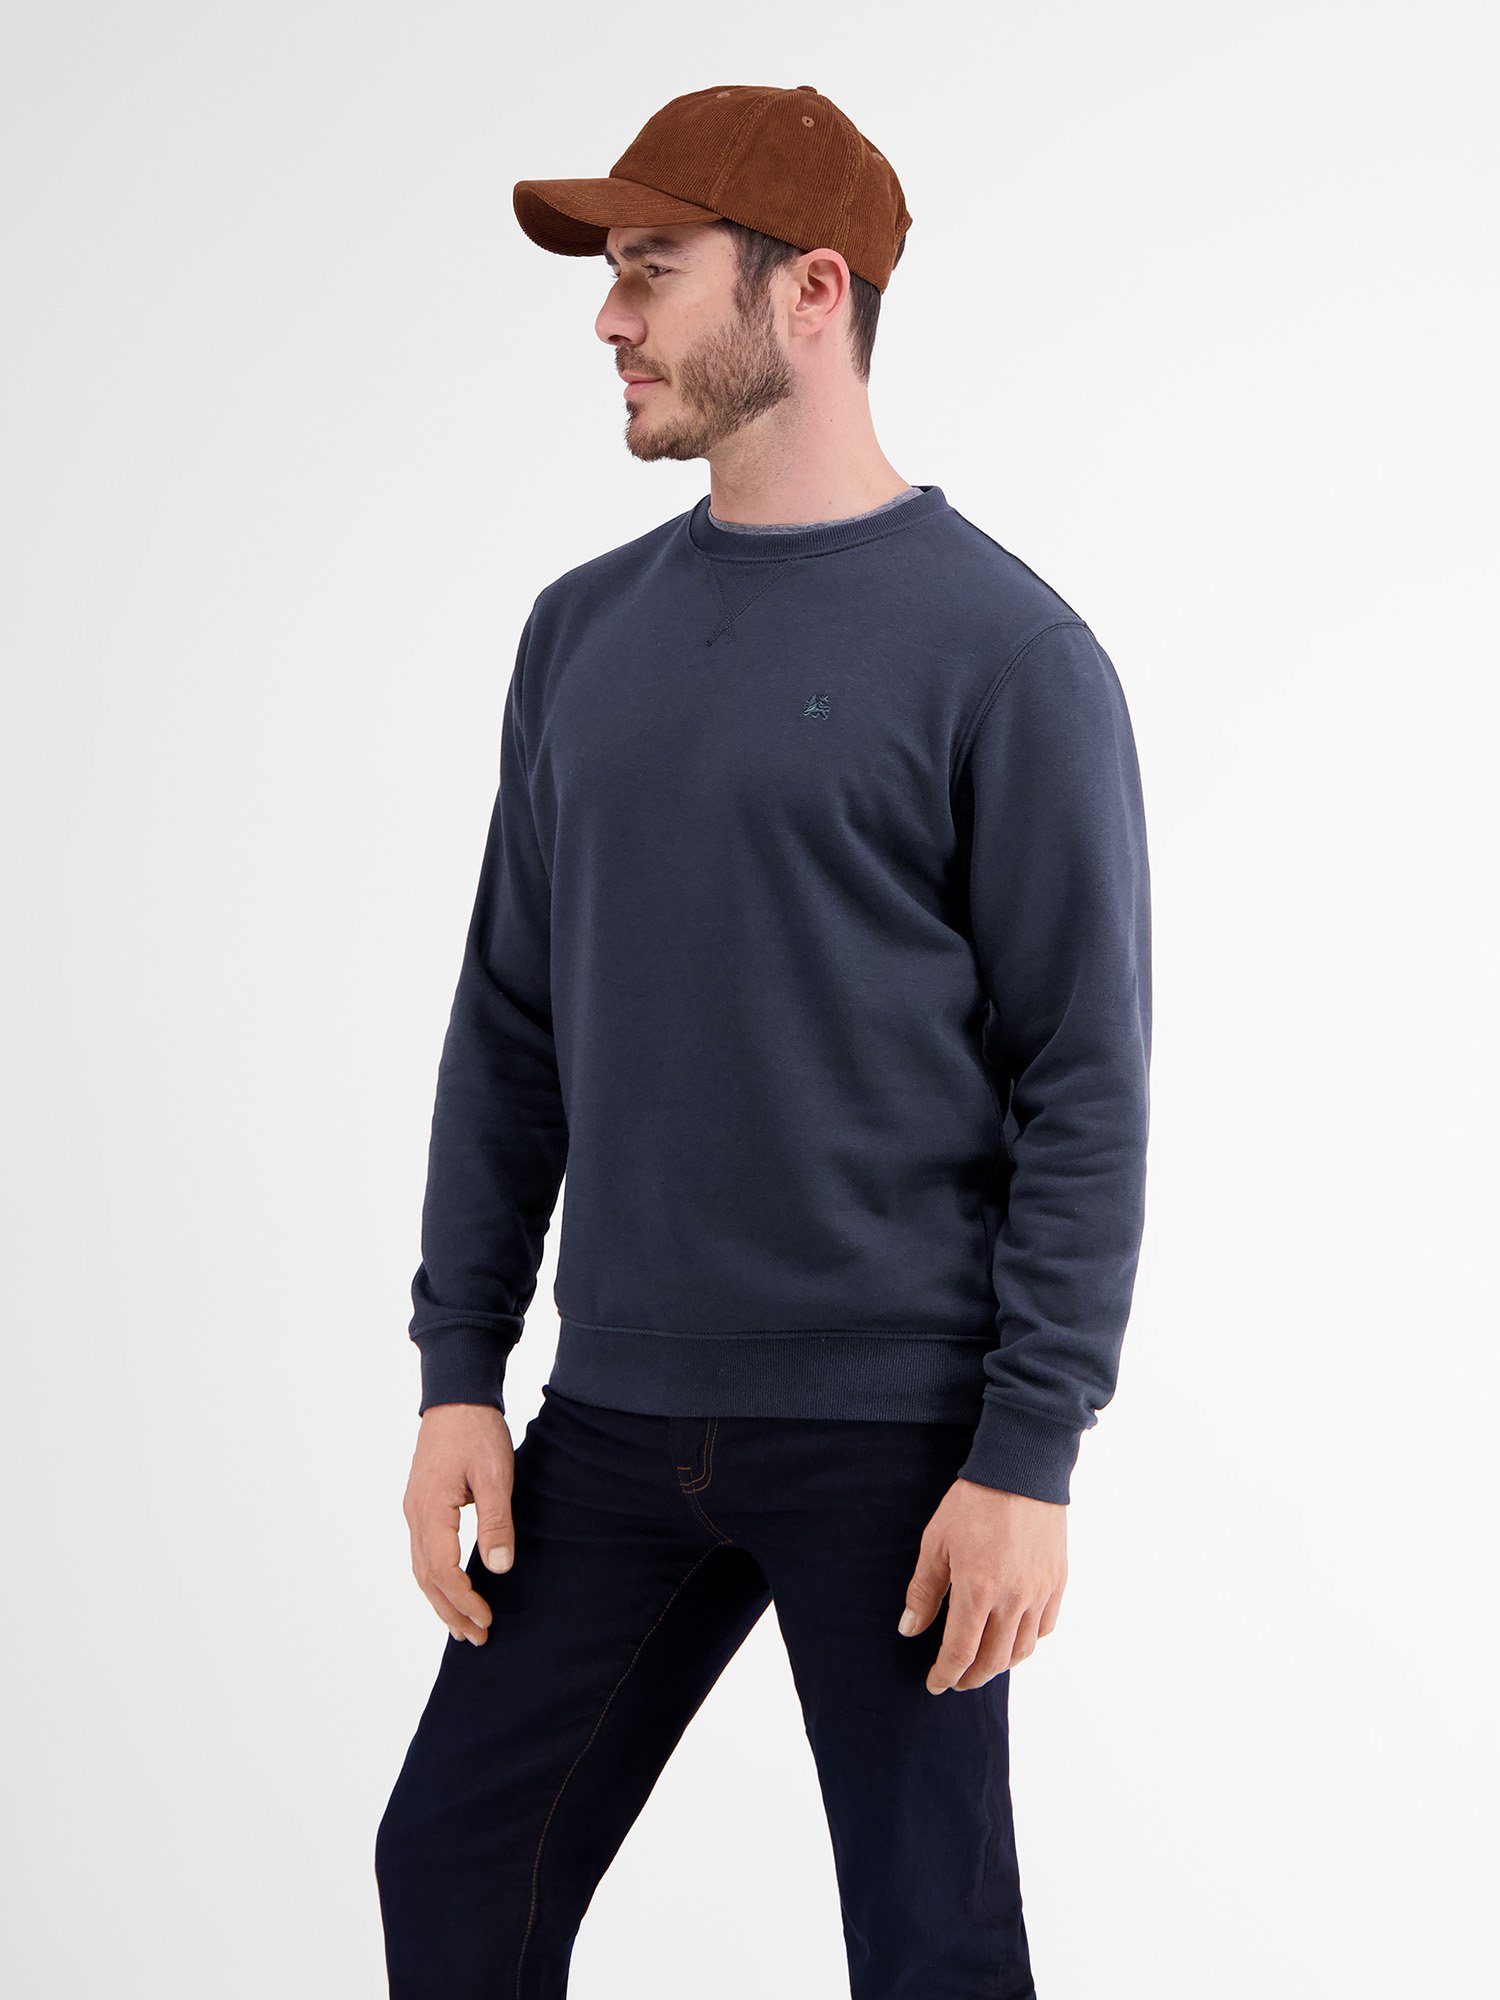 Leichter Sweater in Strukturqualität NAVY LERROS Sweatshirt CLASSIC LERROS